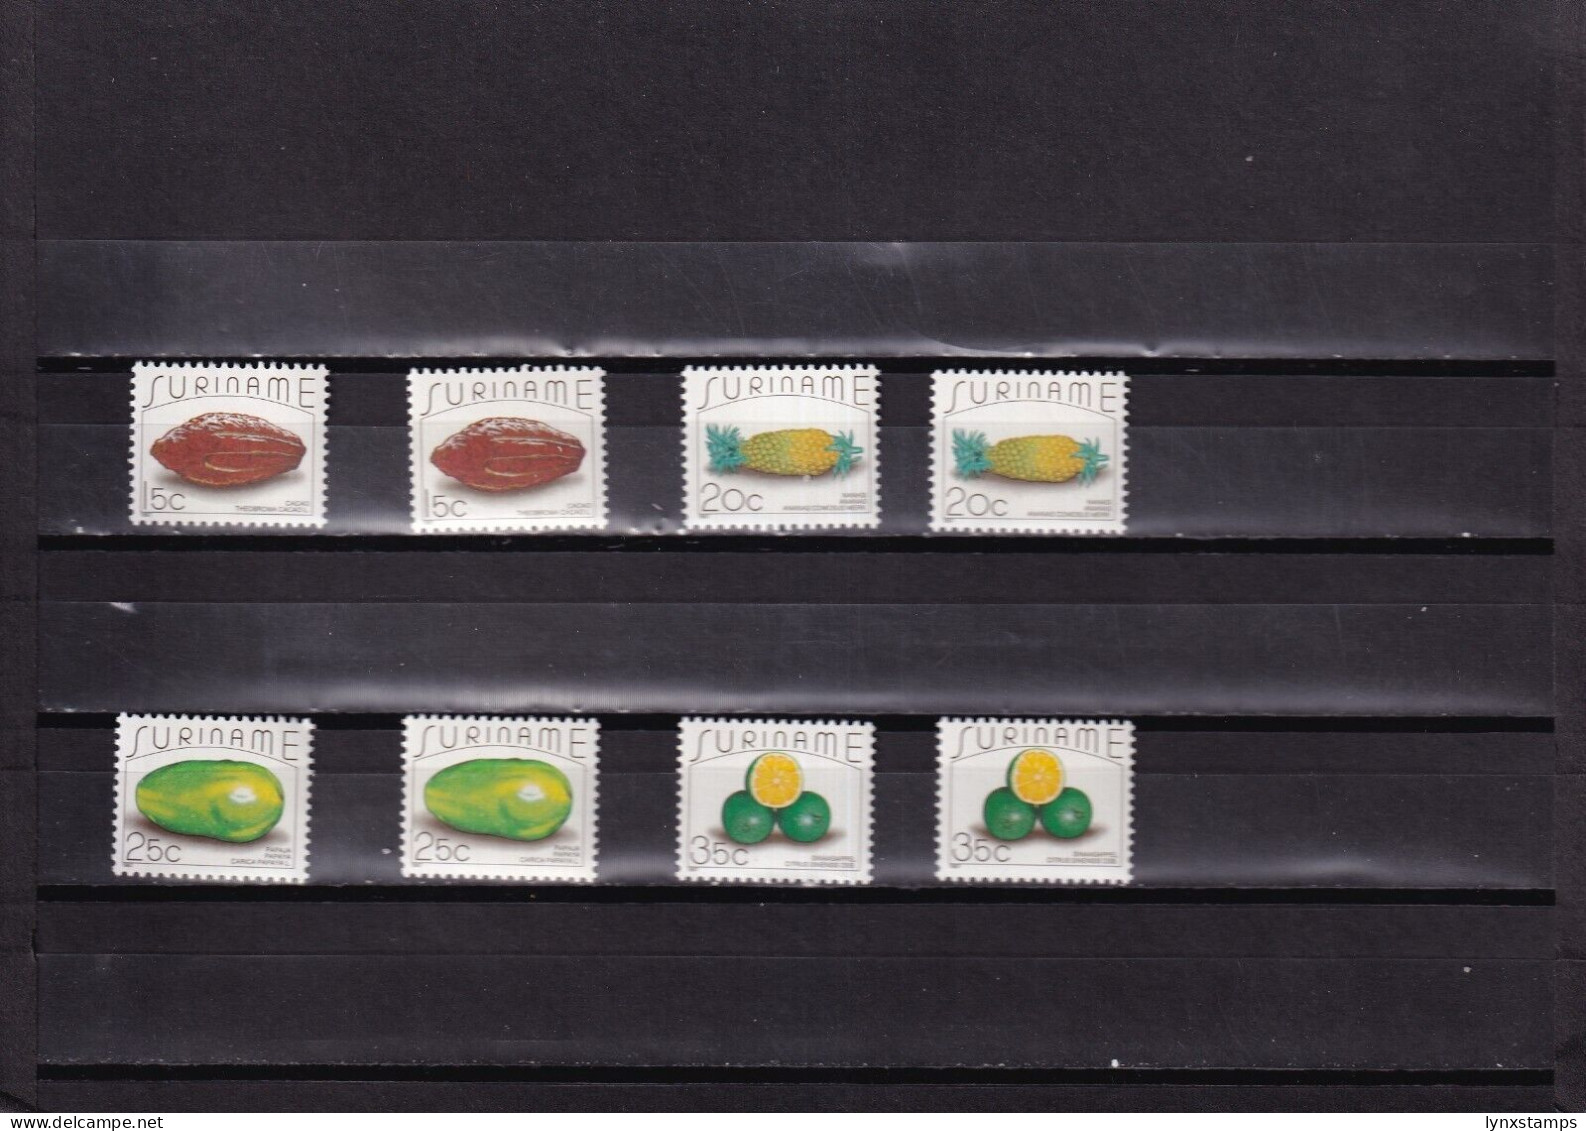 ER03 Suriname 1987 Postal Stamps Fruits MNH Stamps - Fruit